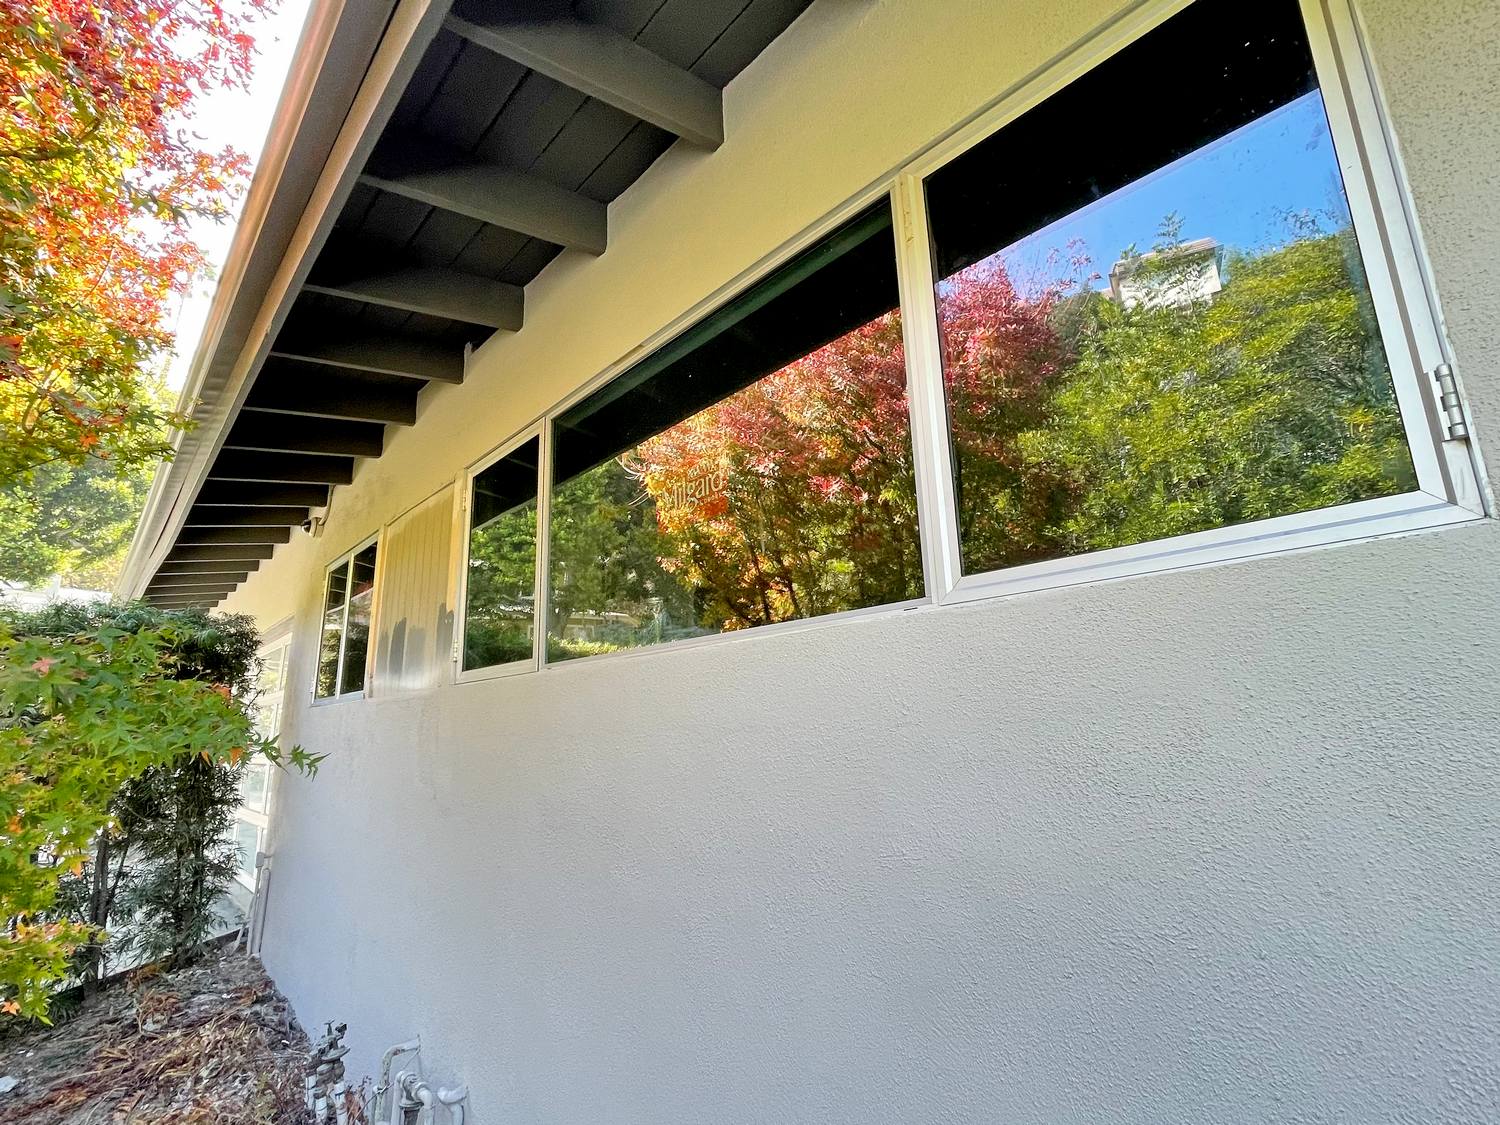 Milgard Windows and Door Replacement in Los Angeles, CA (2)